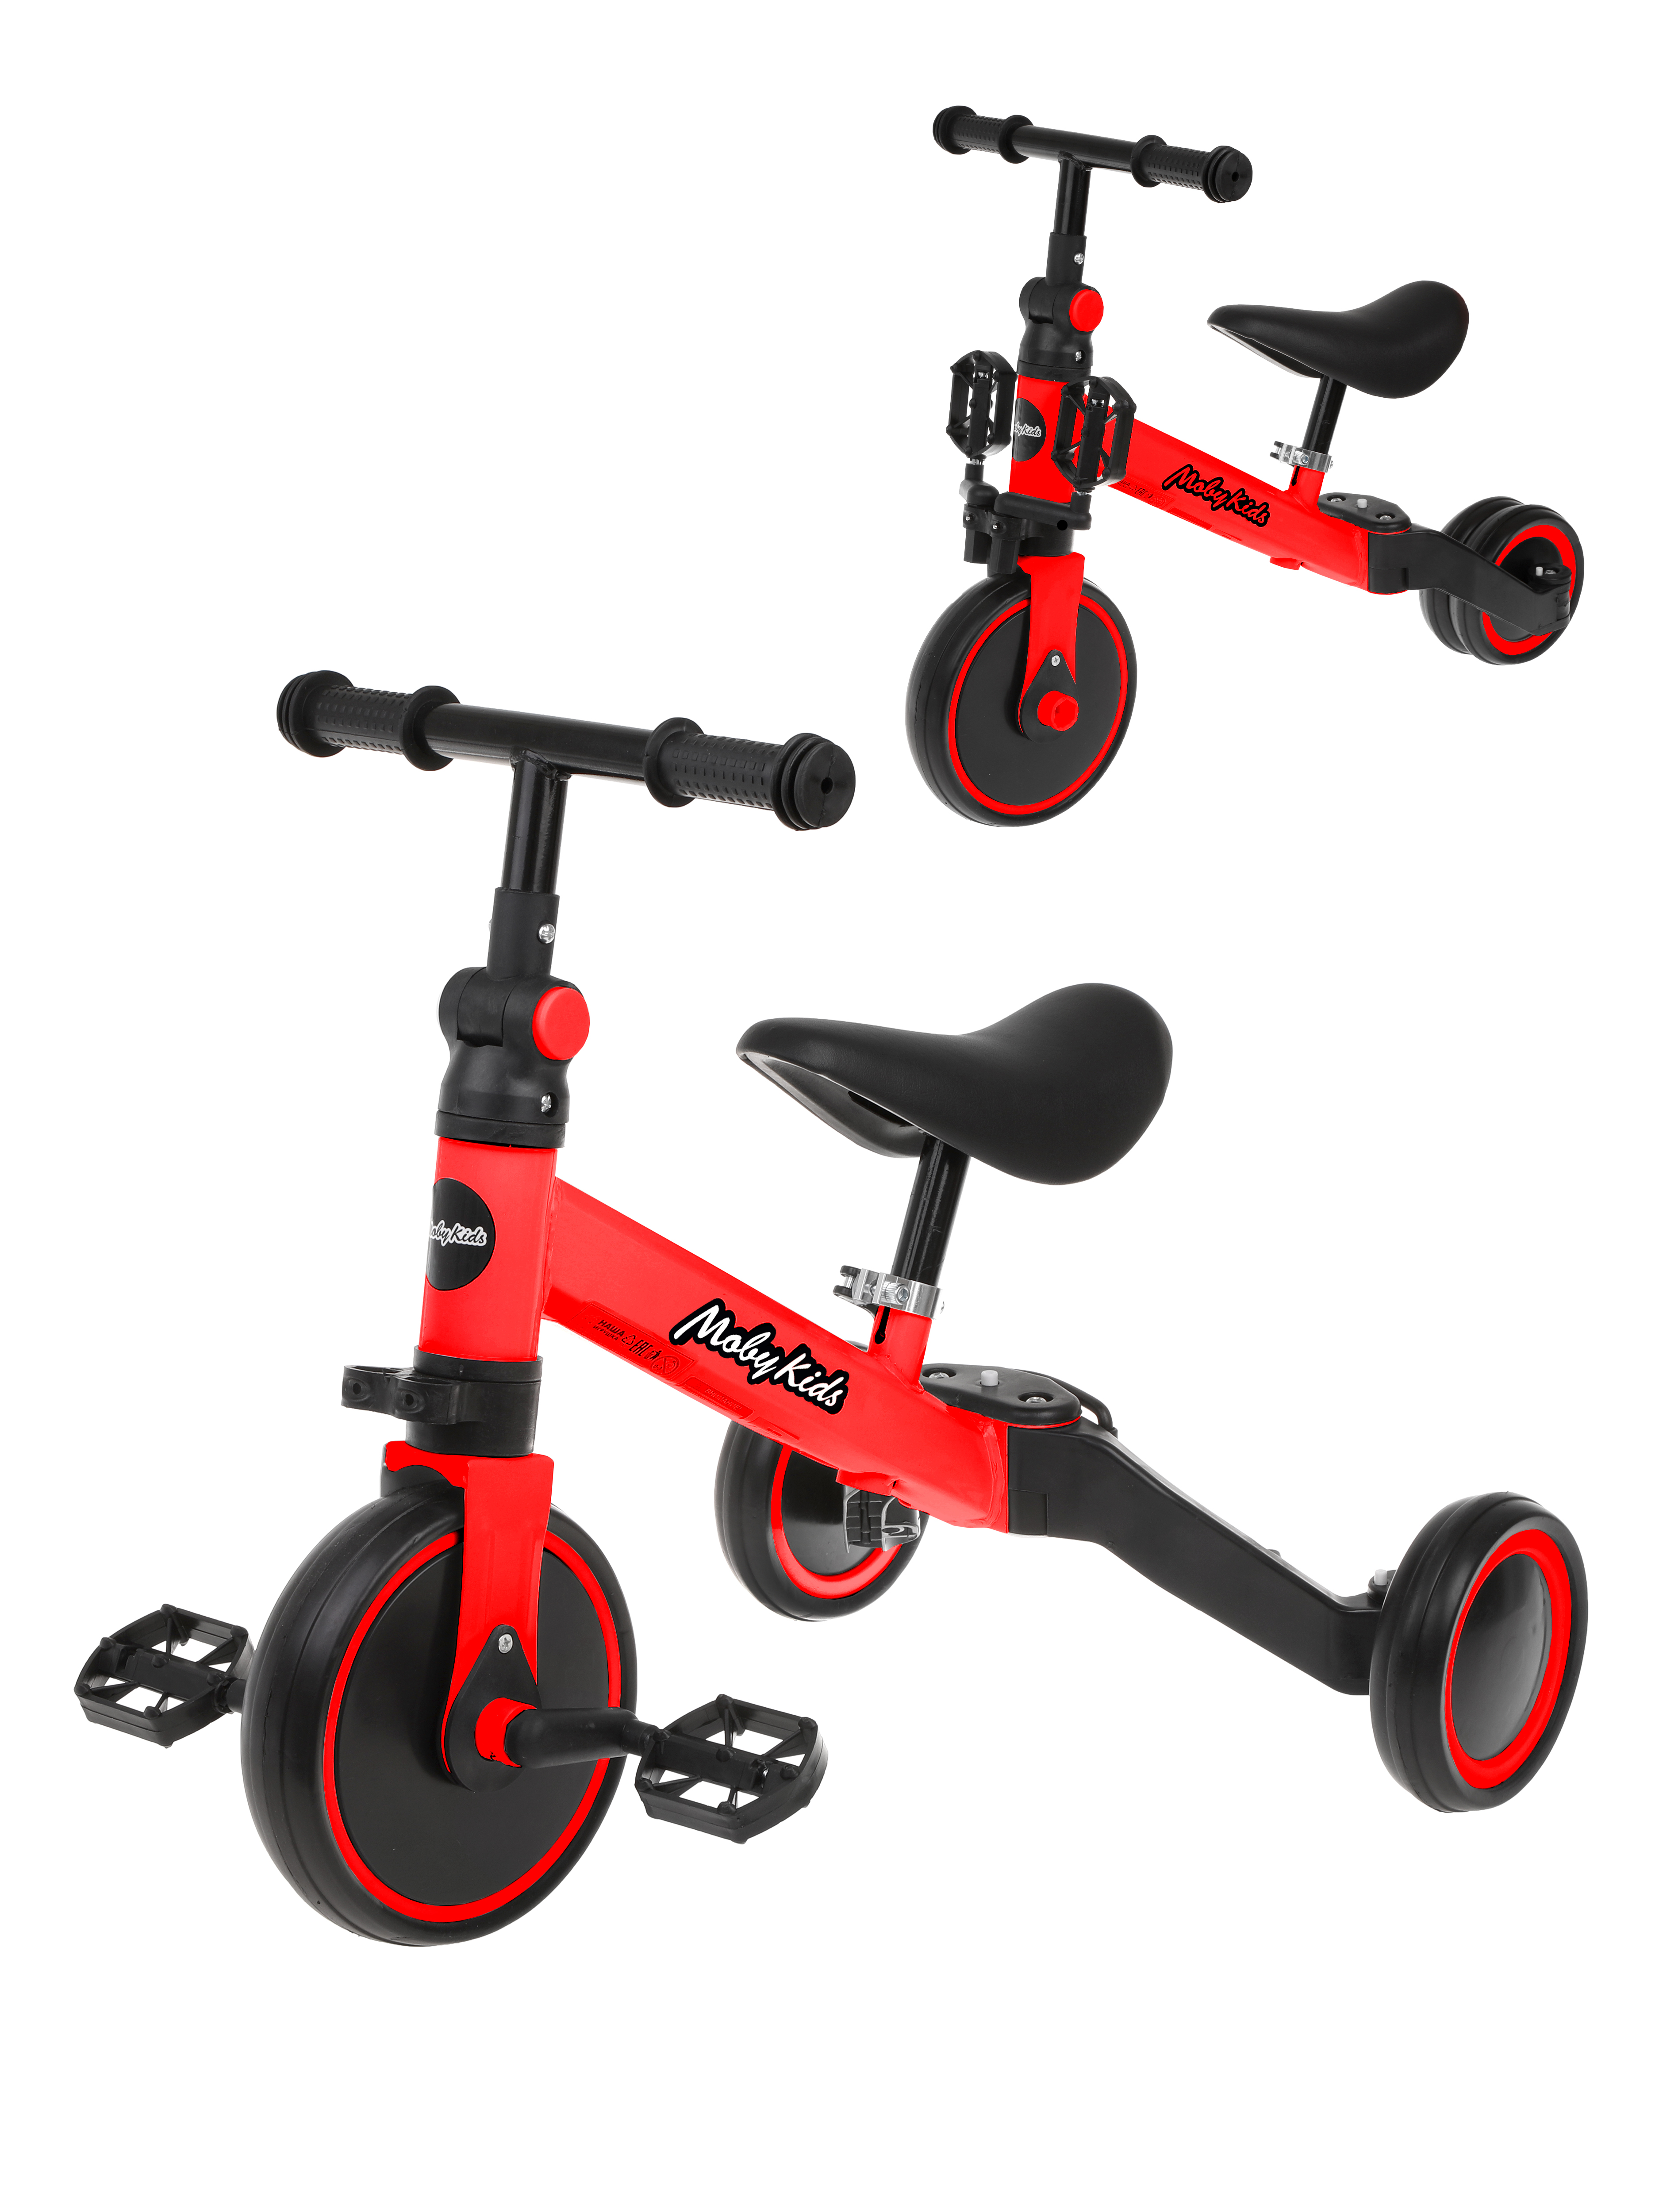 Беговел Moby Kids велосипед трансформер детский 2 в 1 SuperJoy, красный велосипед детский трехколесный 3 в 1 moby kids принцесса 9x7 eva 649243 розовый